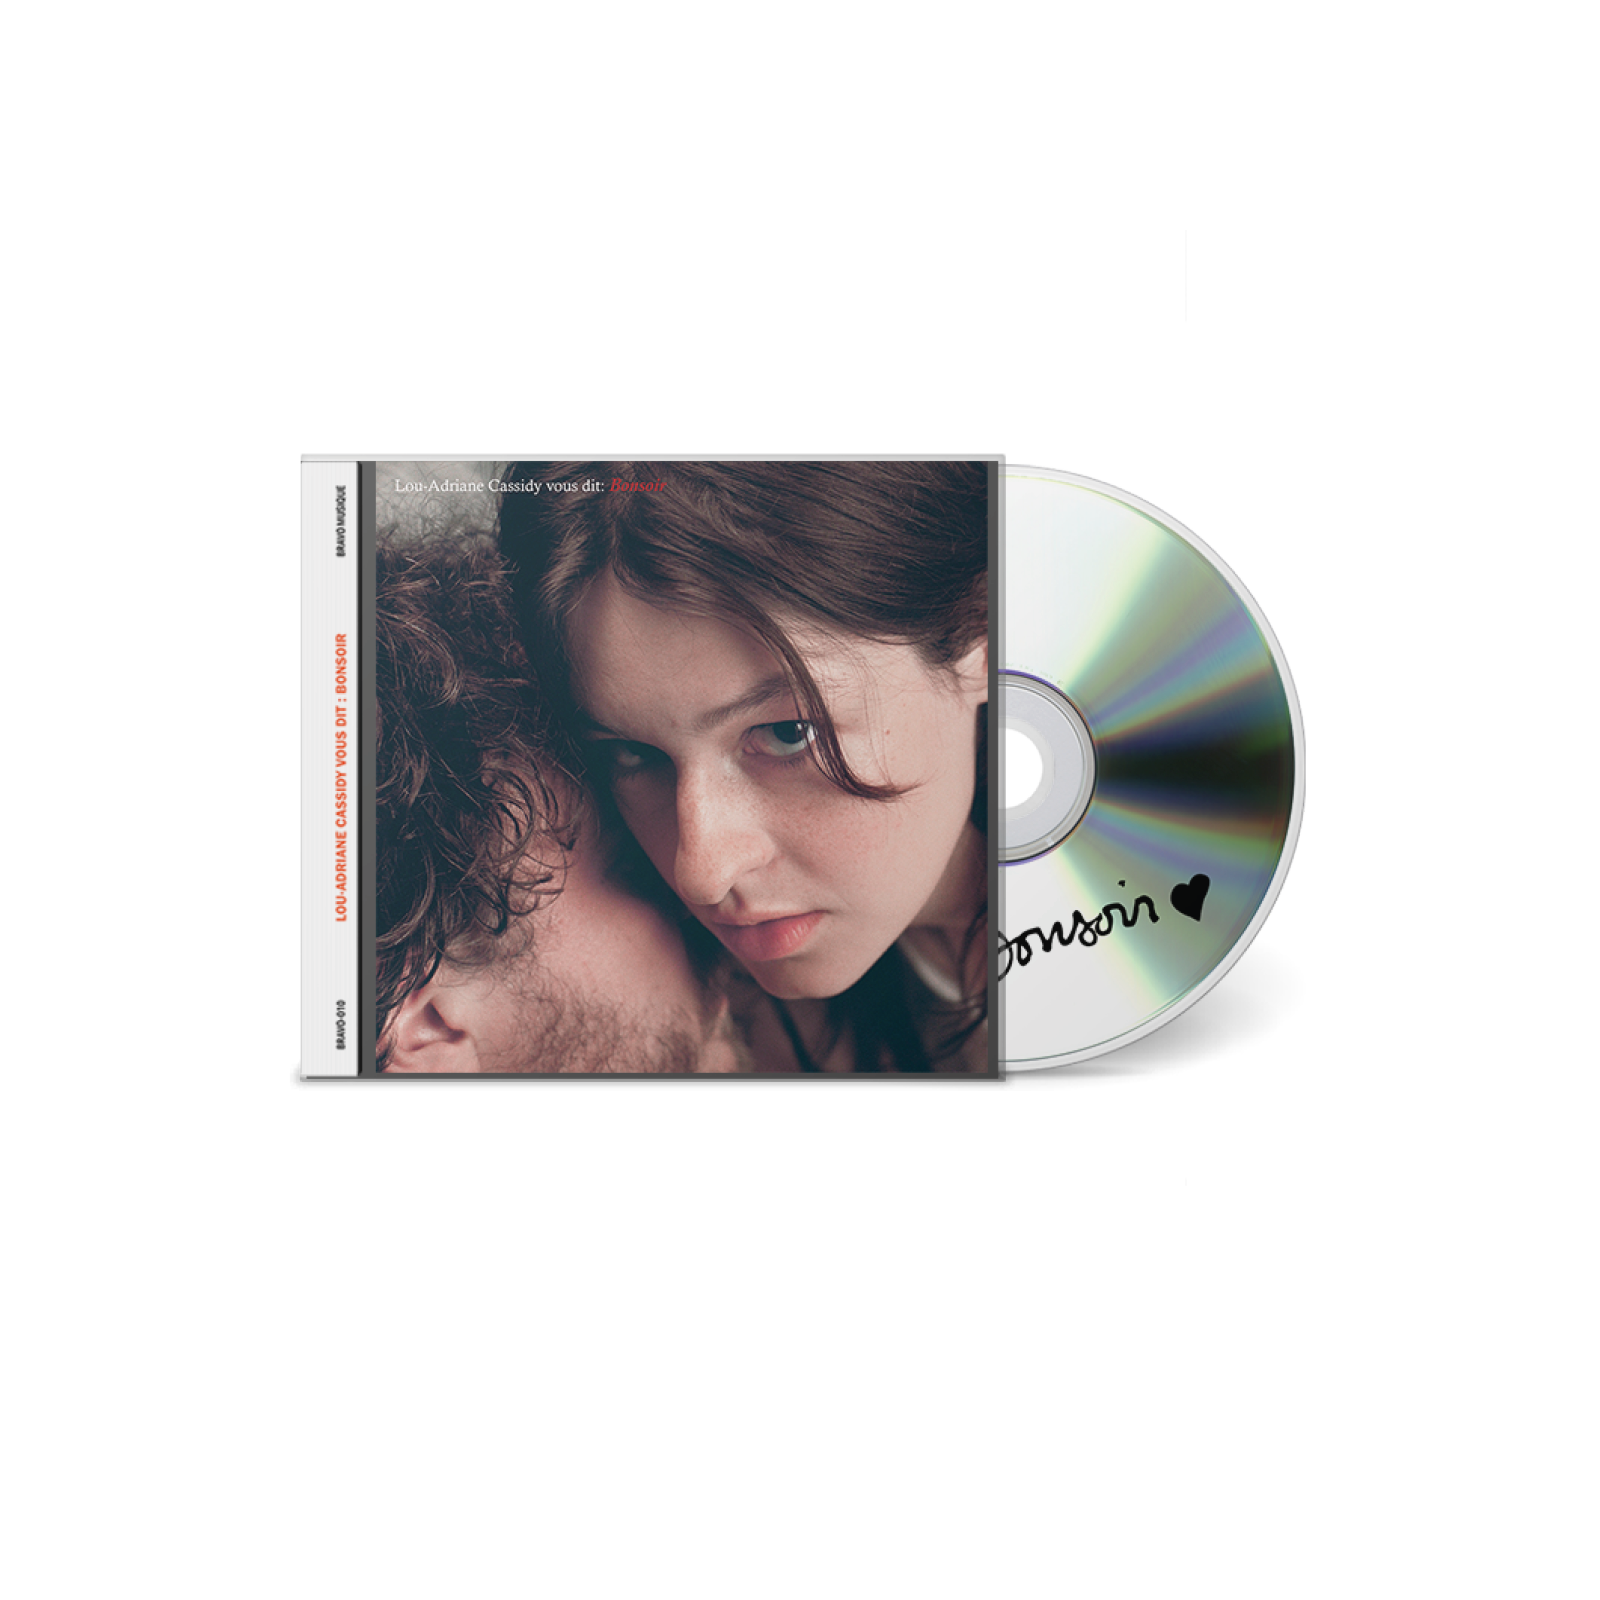 Lou-Adriane Cassidy - Discographie - CD